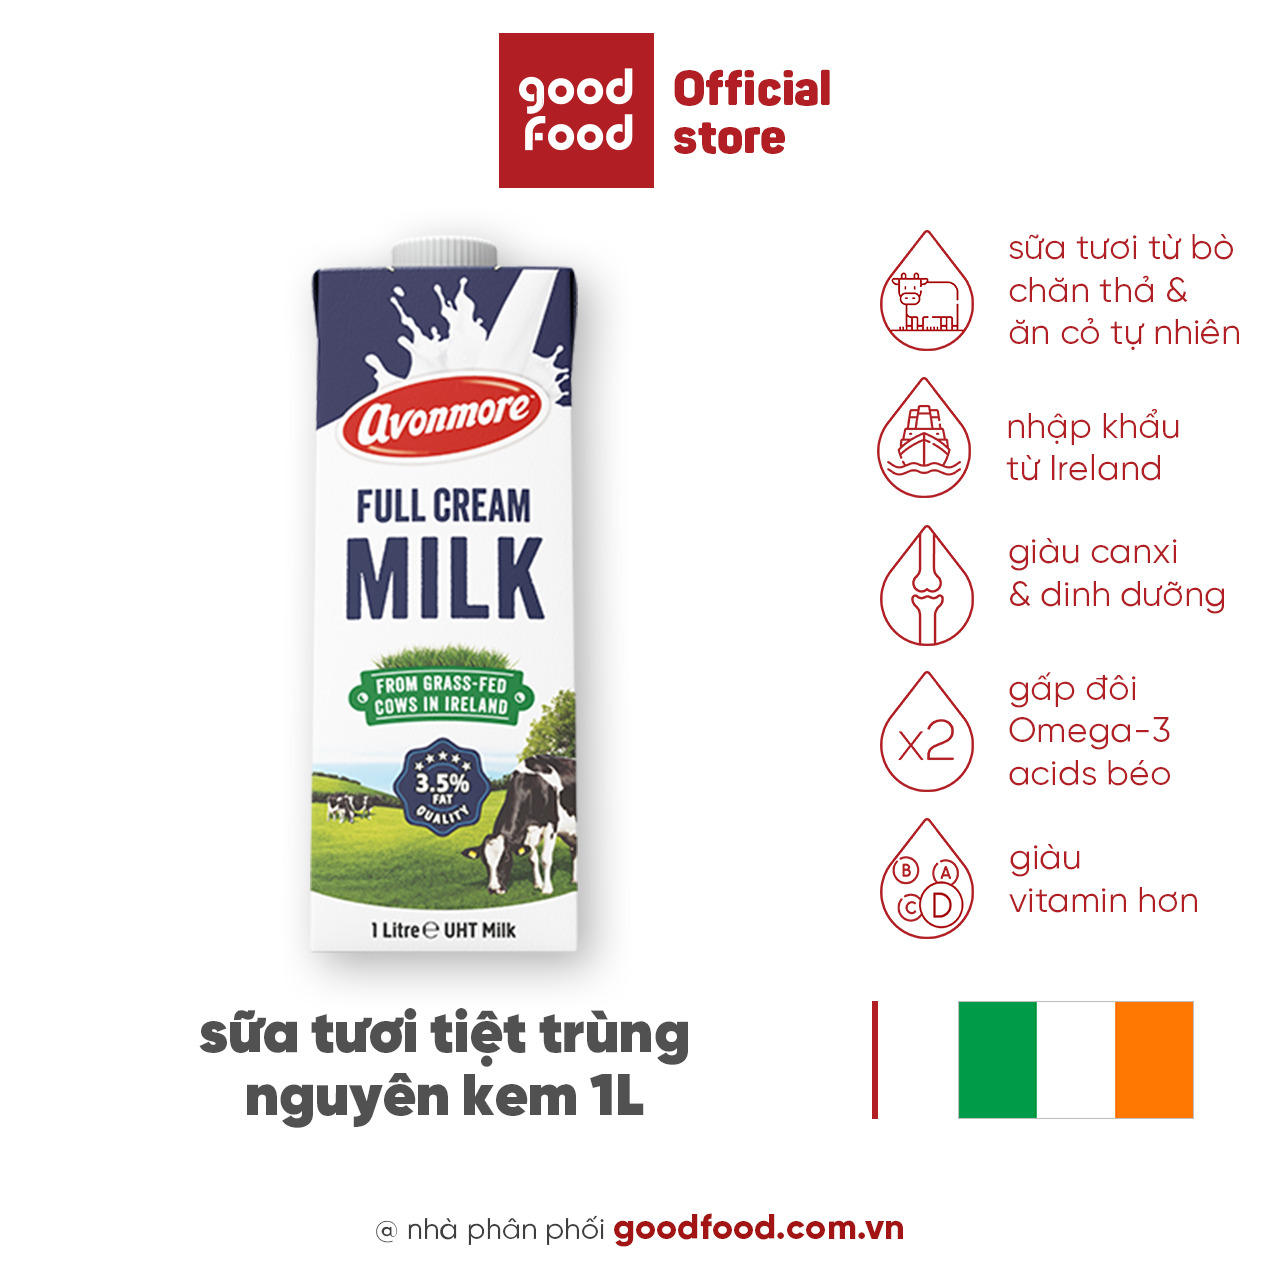 sữa tươi nguyên chất tiệt trùng (không đường) avonmore uht full cream milk 1l giàu chất dinh dưỡng tốt cho sức khỏe 1